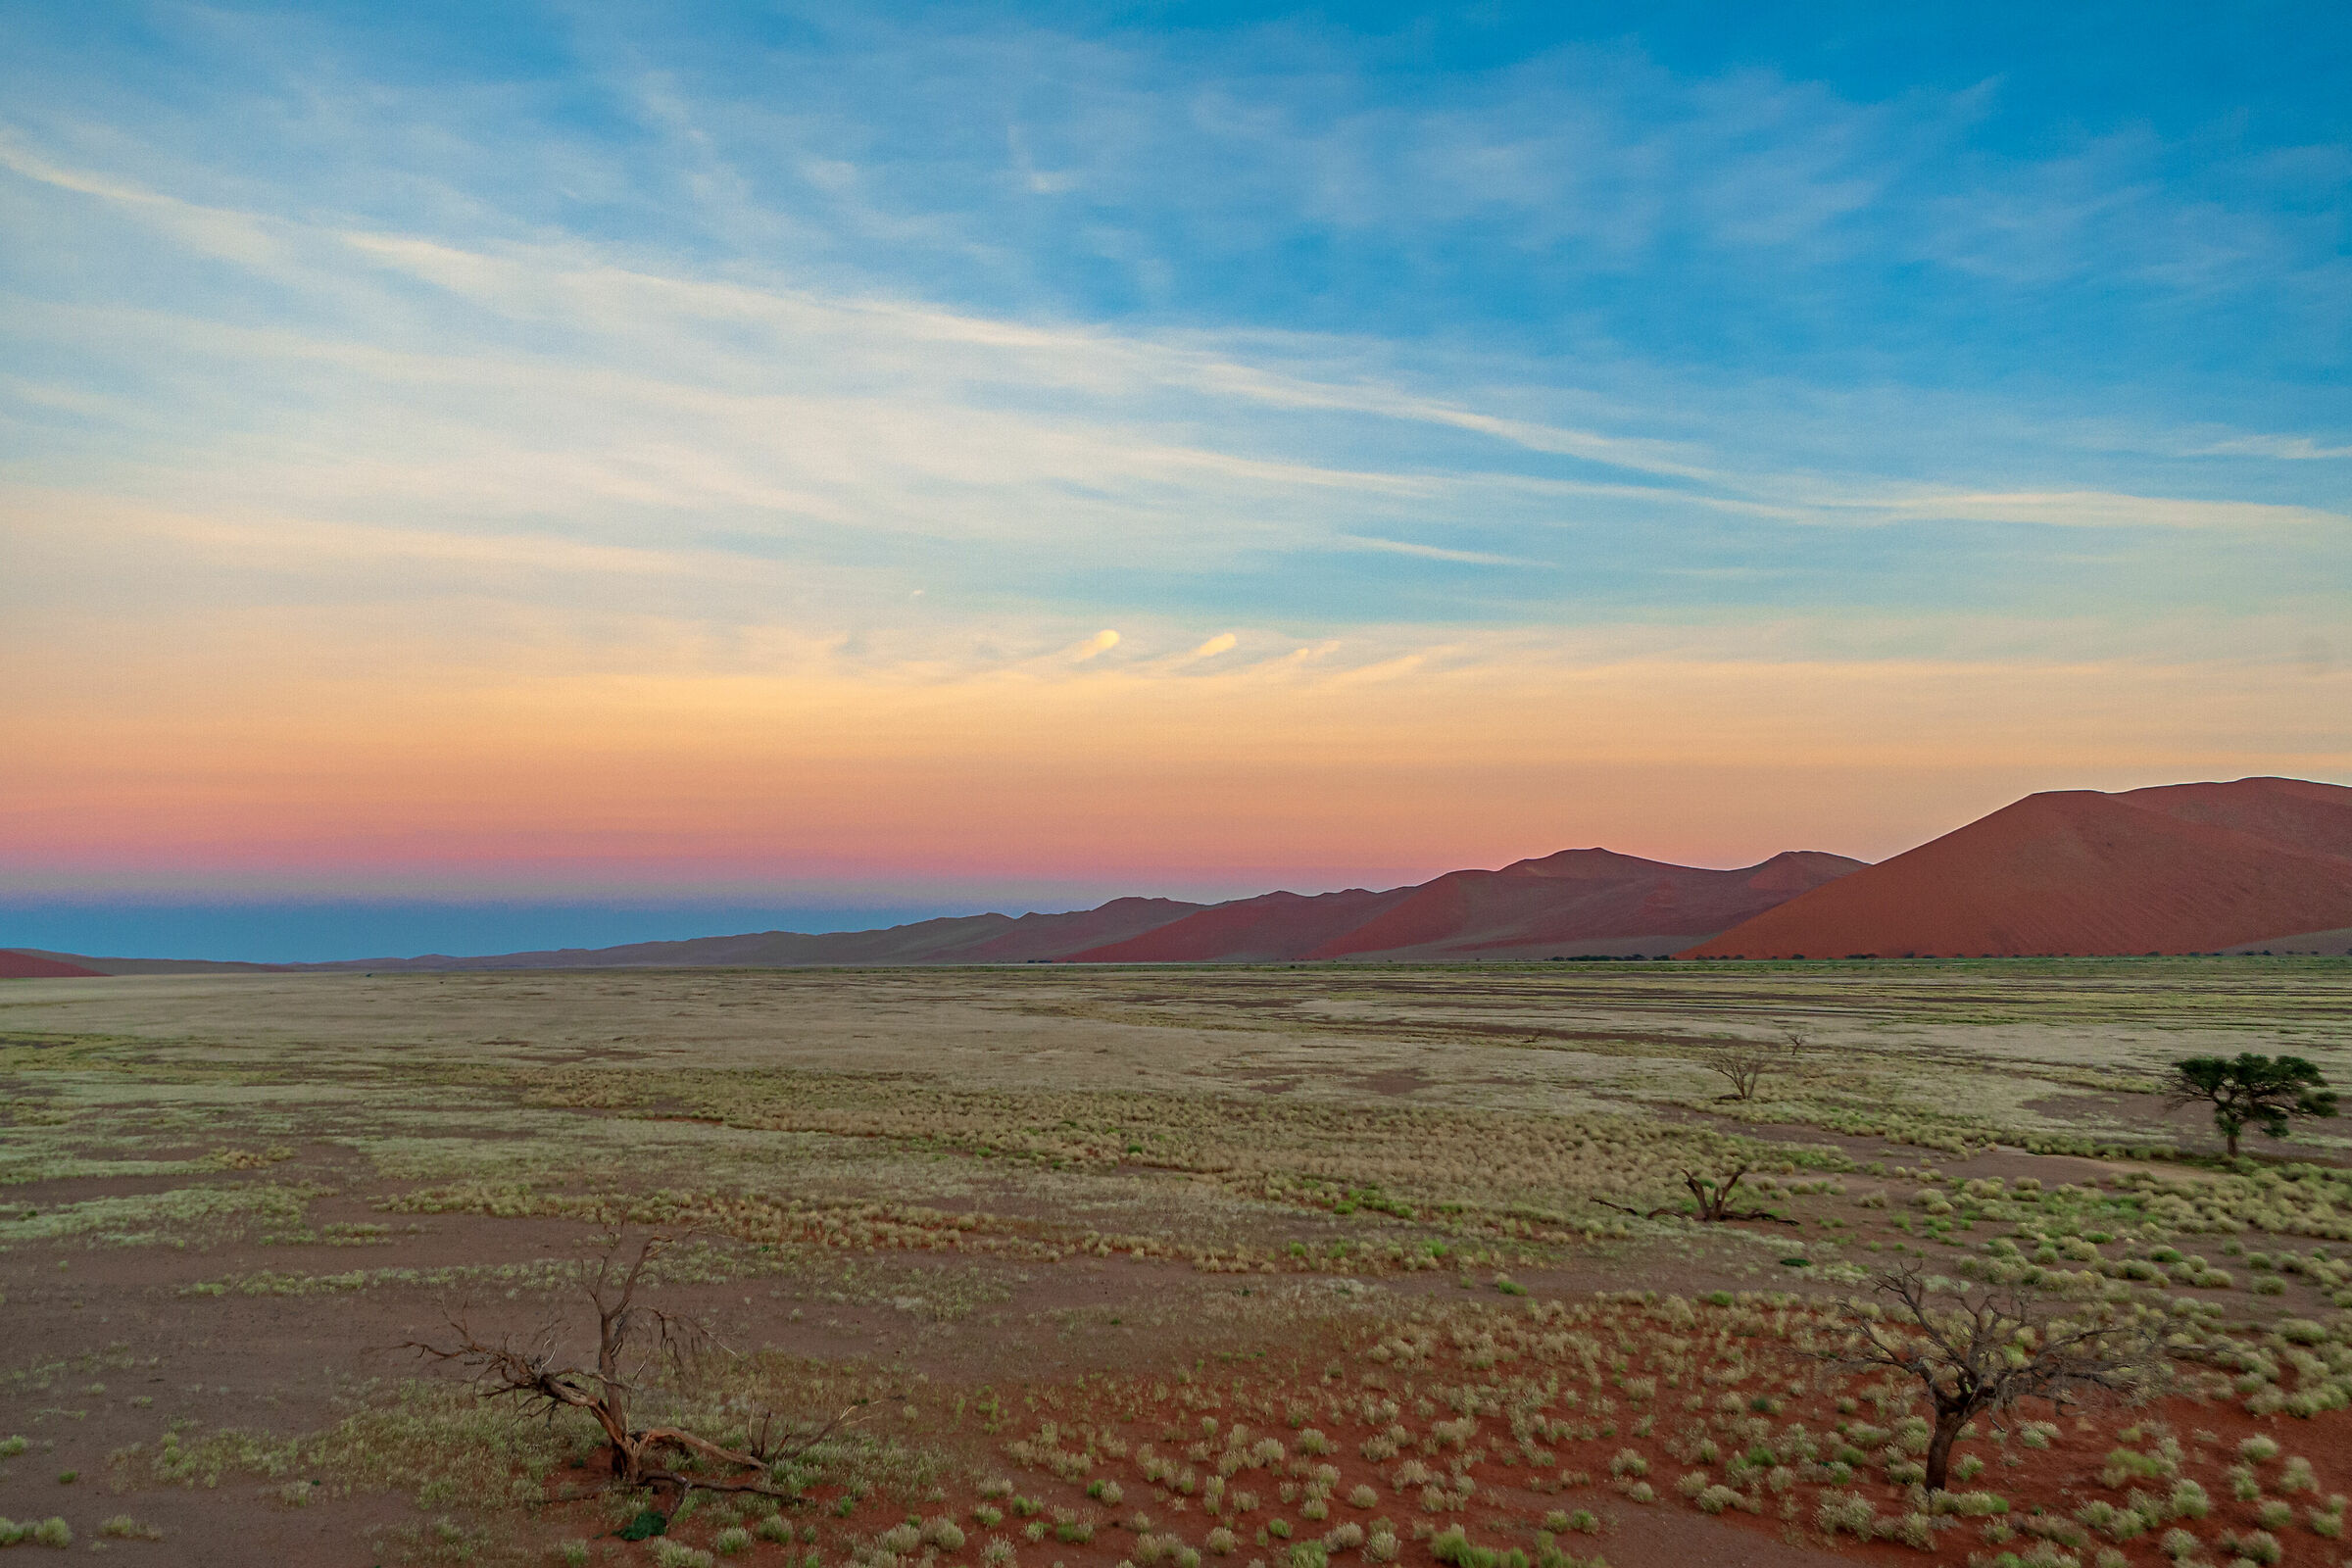 Sunrise in the Namibian desert...